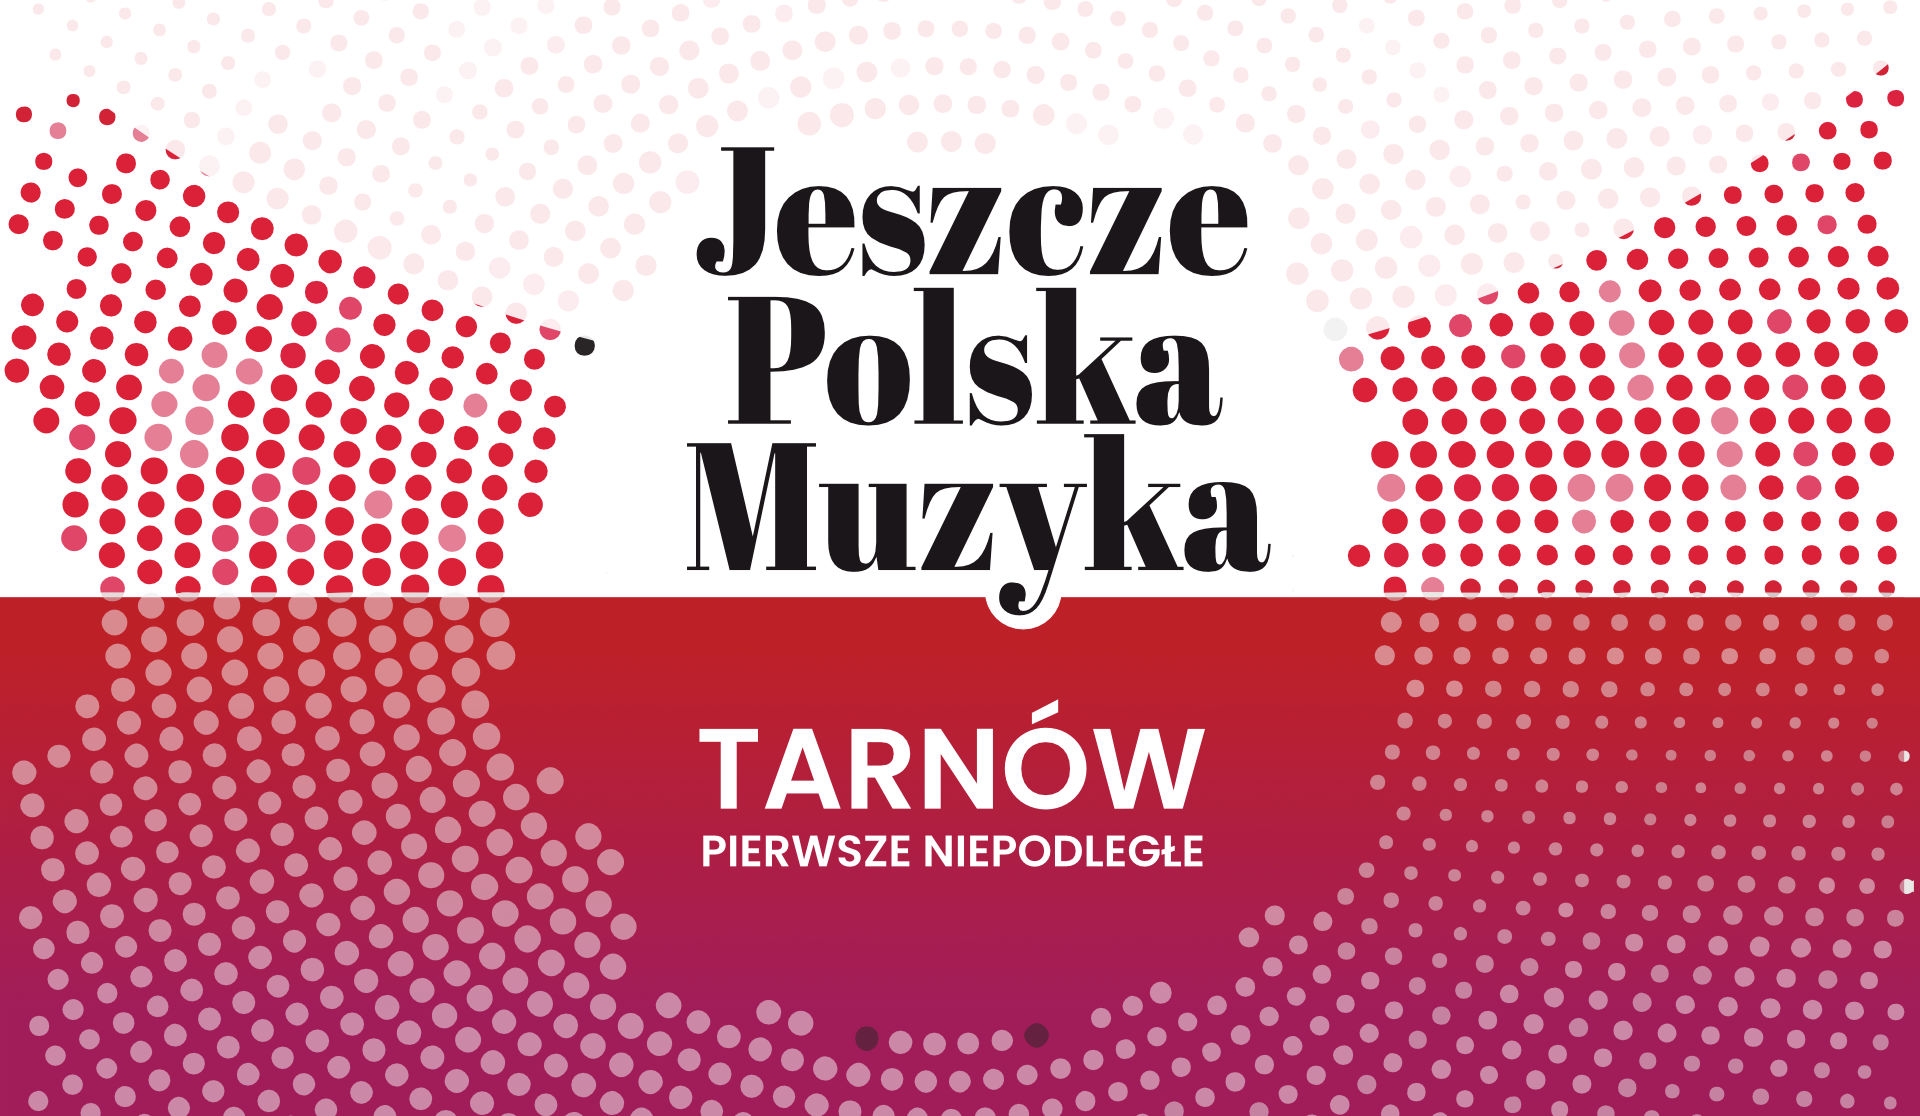 28.10.2022 – 11th Jeszcze Polska Muzyka, Tarnow